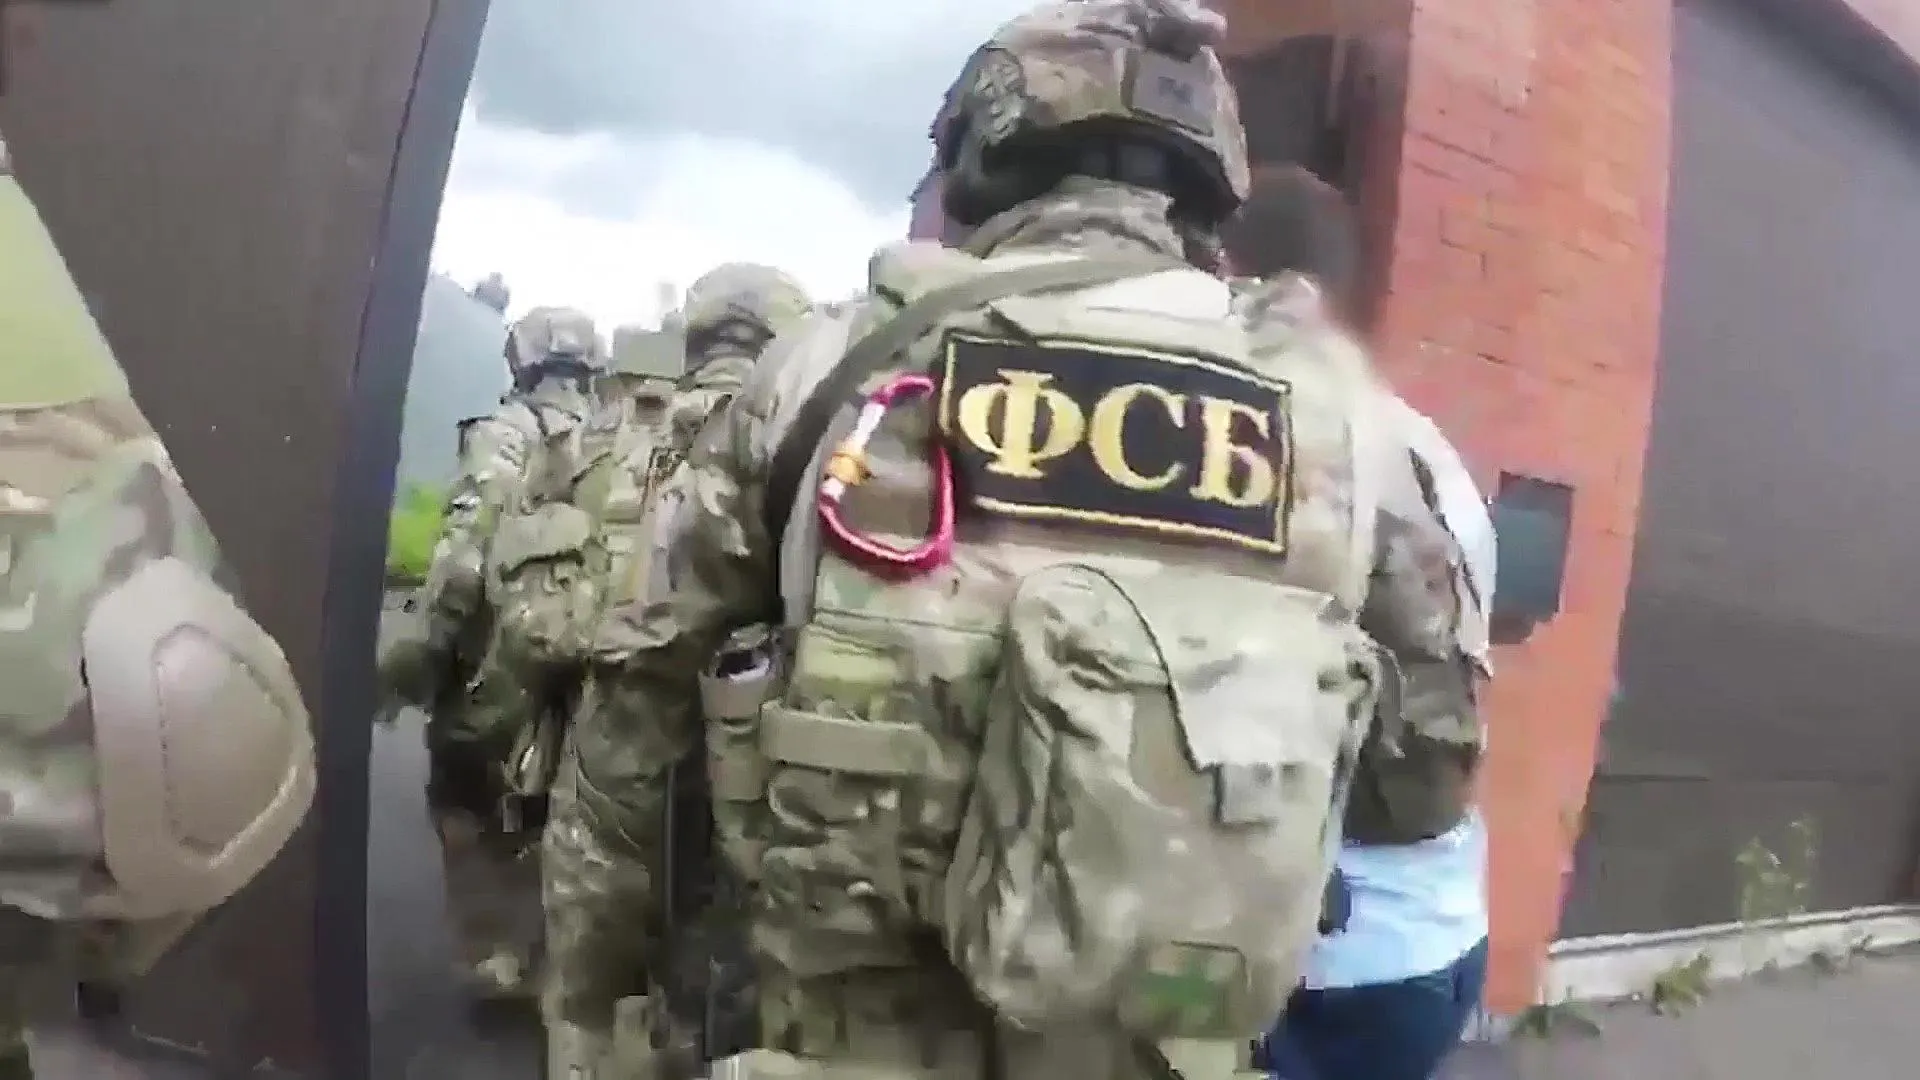 ФСБ задержала россиянина, планировавшего теракт на Транссибирской магистрали